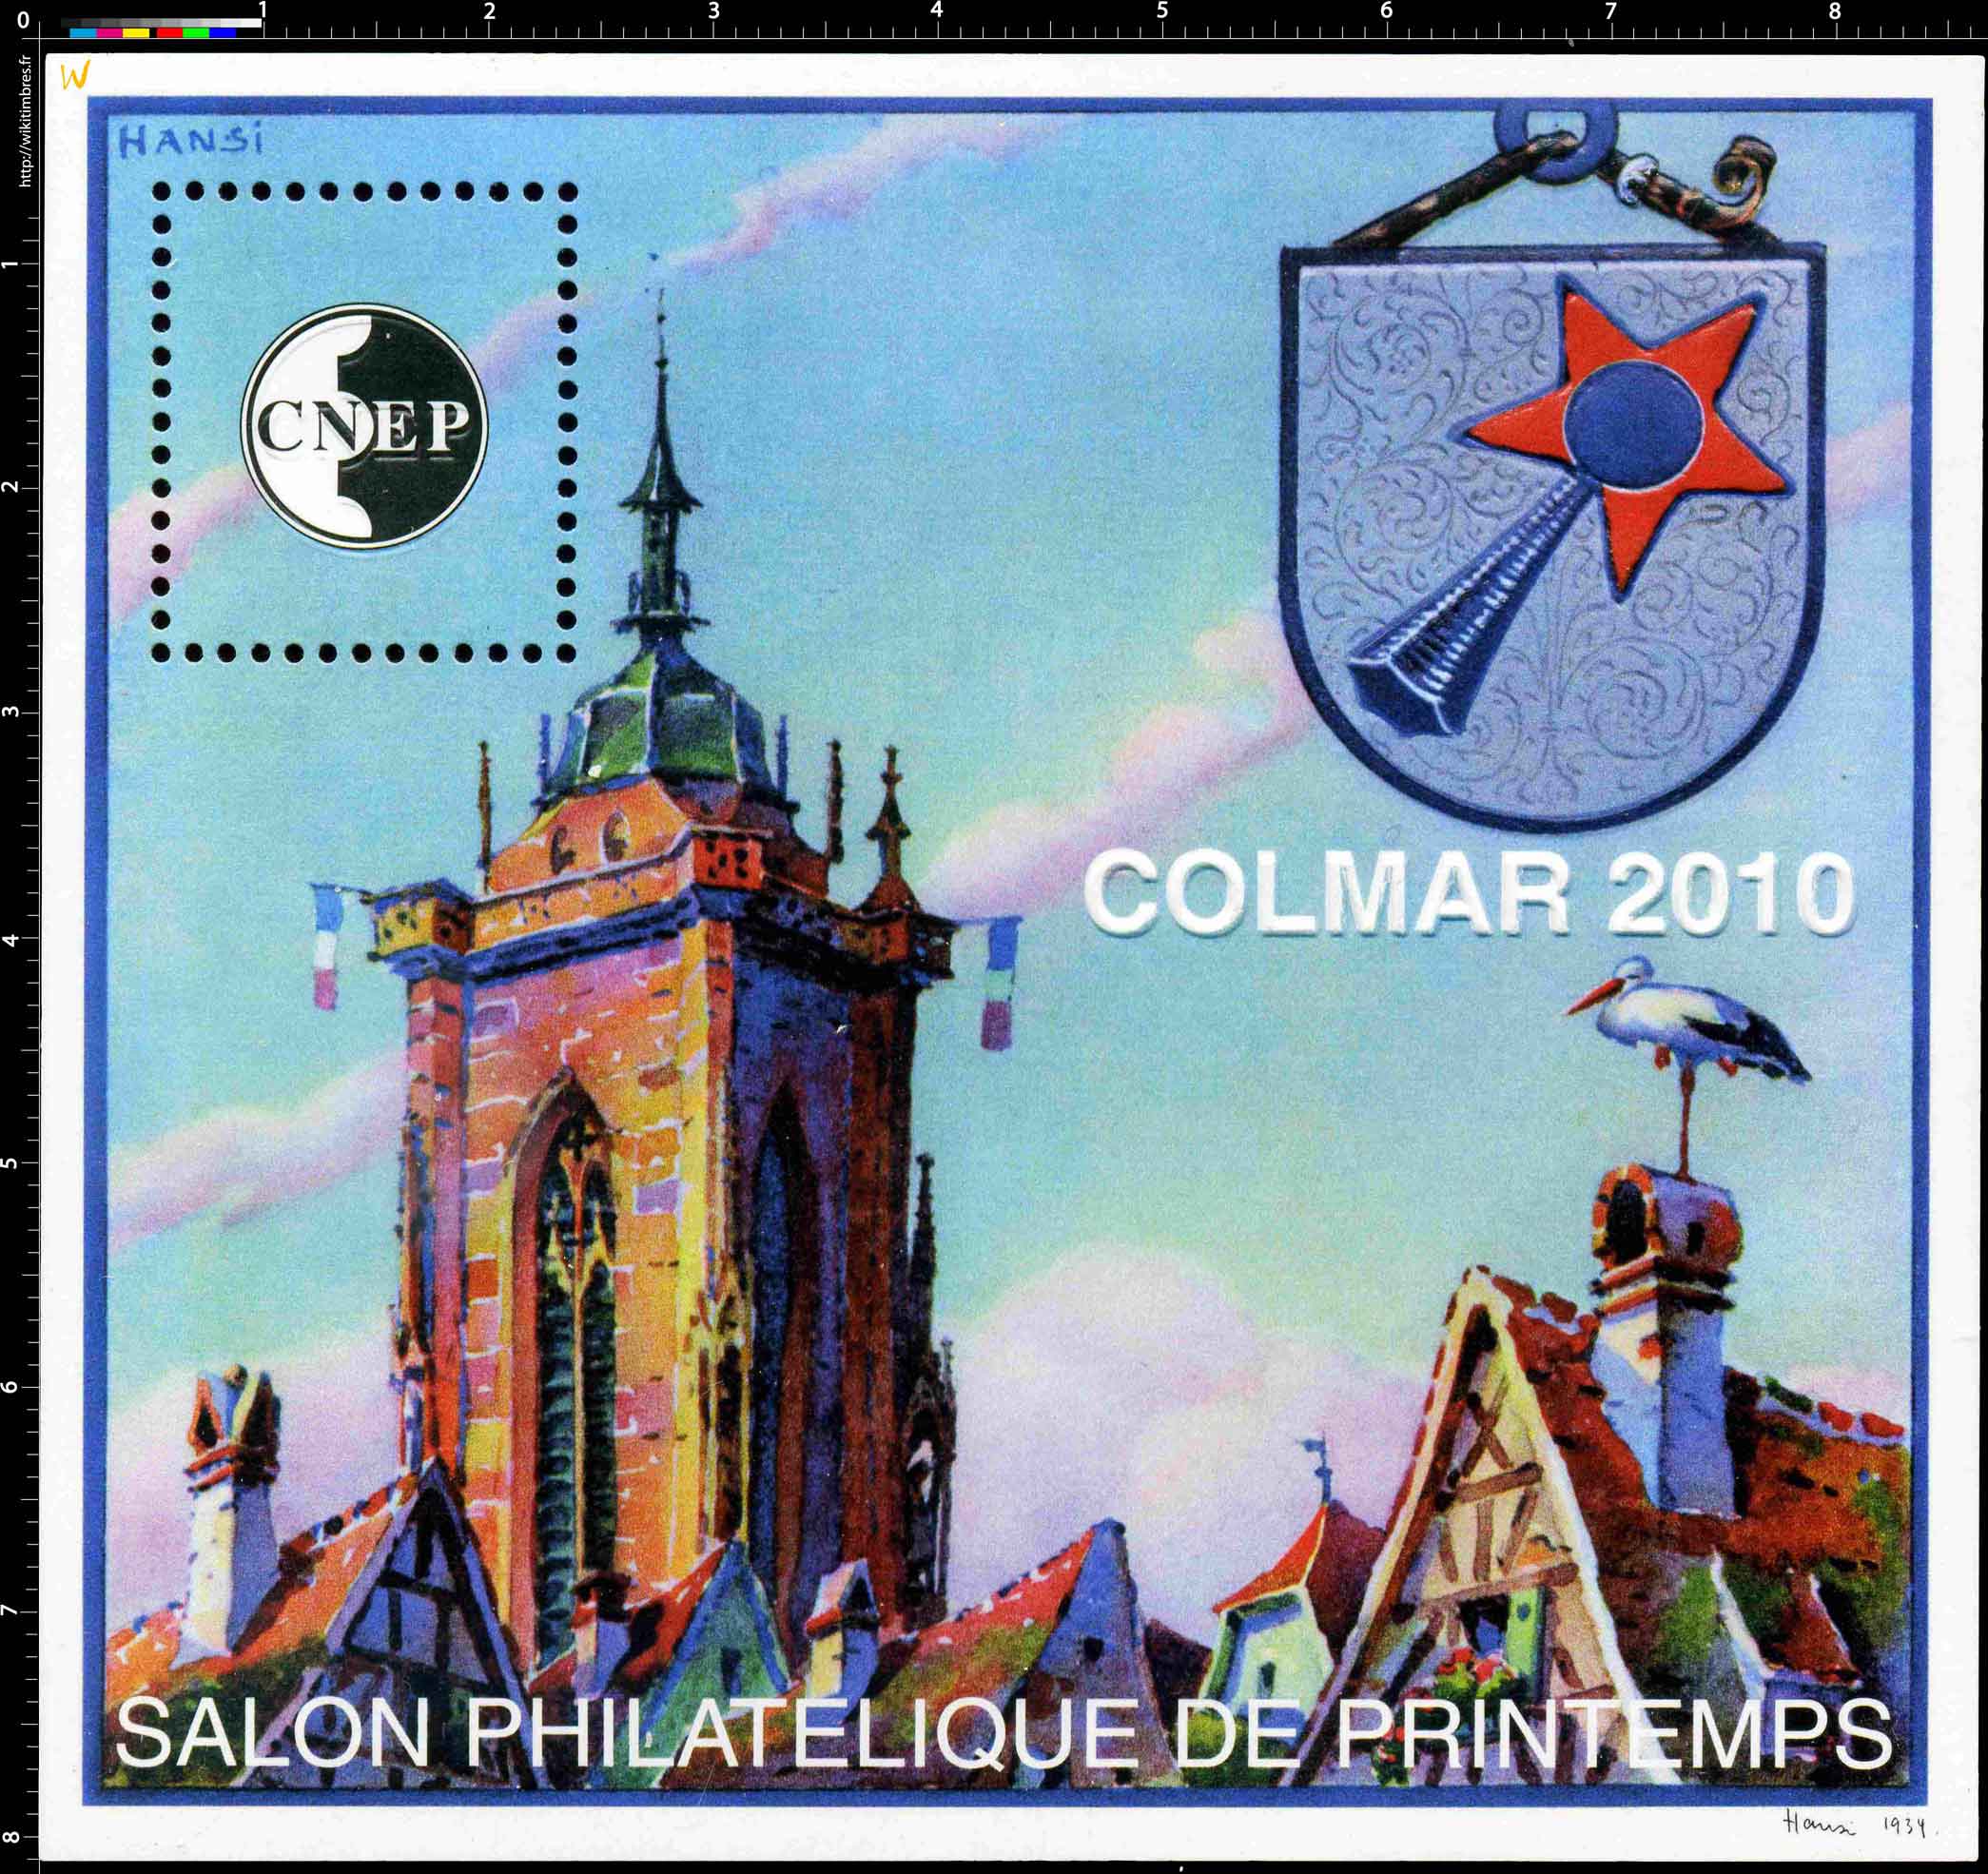 2010 Salon philatélique de printemps Colmar CNEP